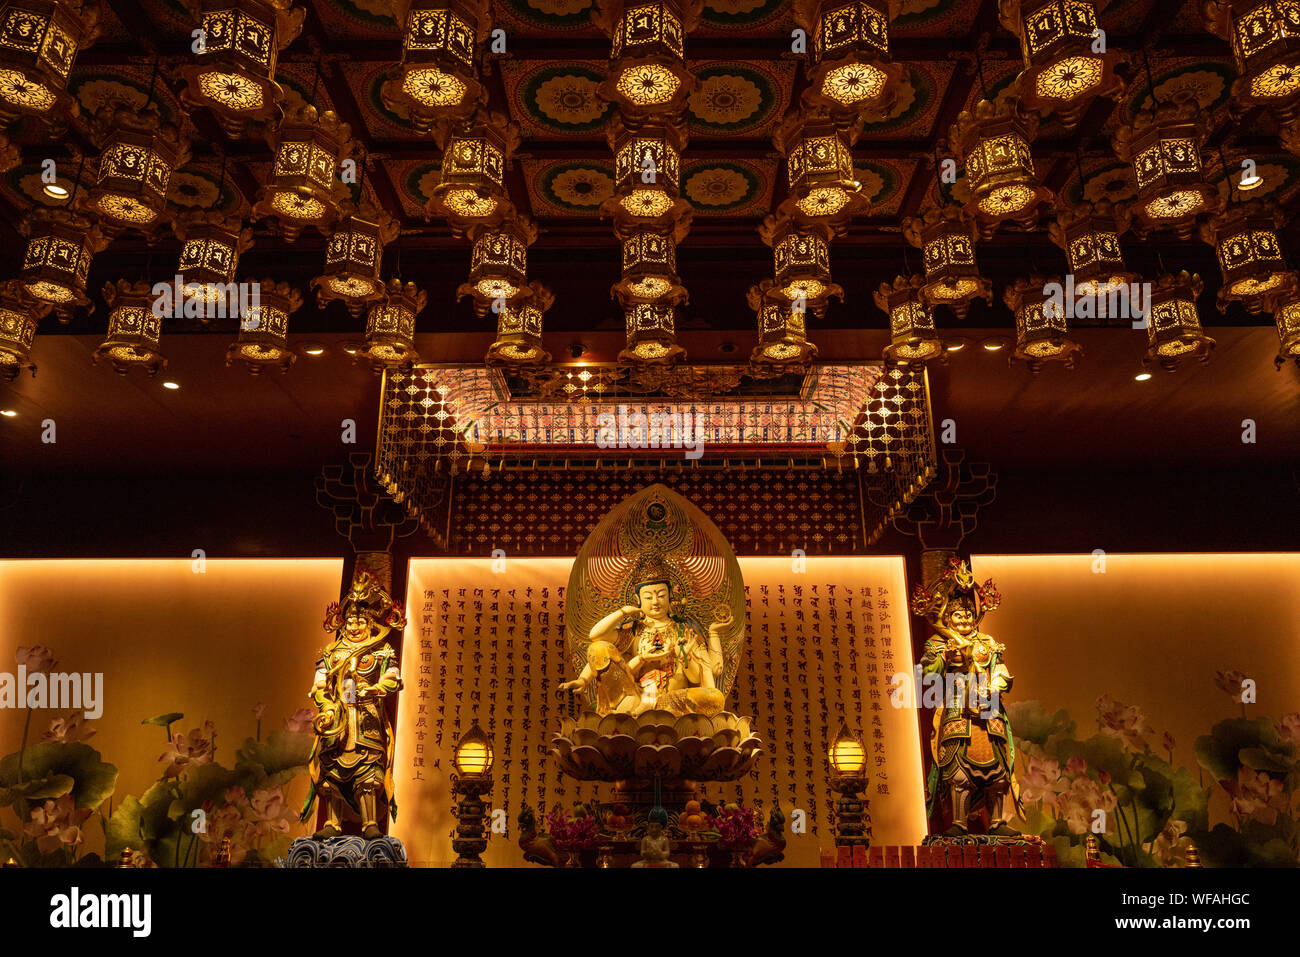 Der Buddha-Zahntempel in Chinatown, Singapur ist eine beliebte Touristenattraktion sowie ein wichtiges Zentrum für den Buddhismus in der Stadt. Stockfoto